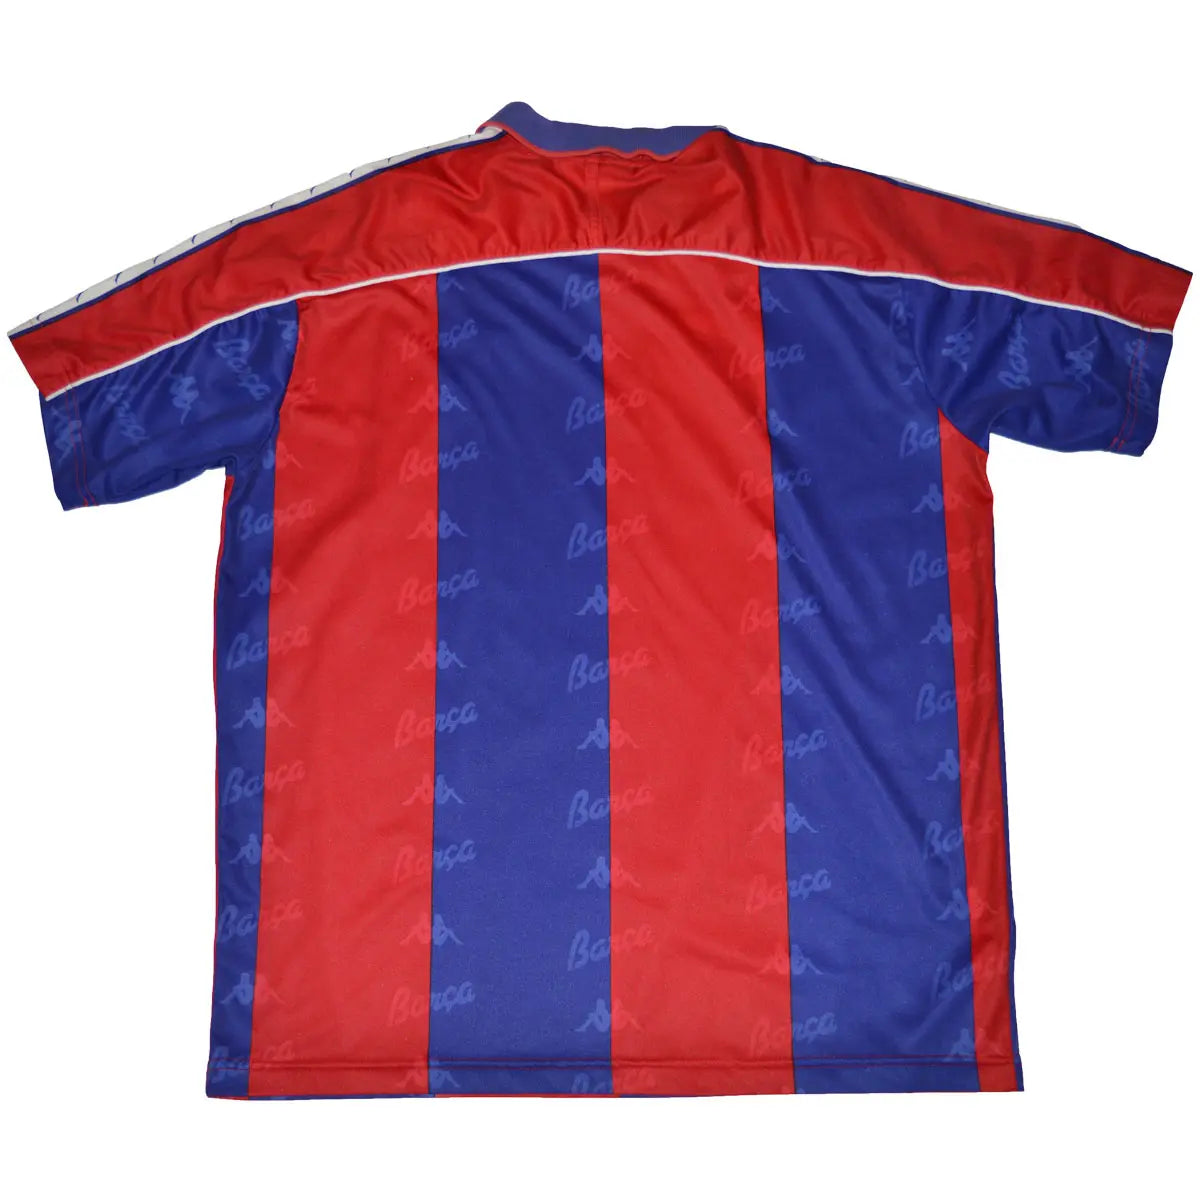 Maillot de foot vintage/retro authentique rouge et bleu Kappa FC Barcelone domicile 1992-1995 de dos